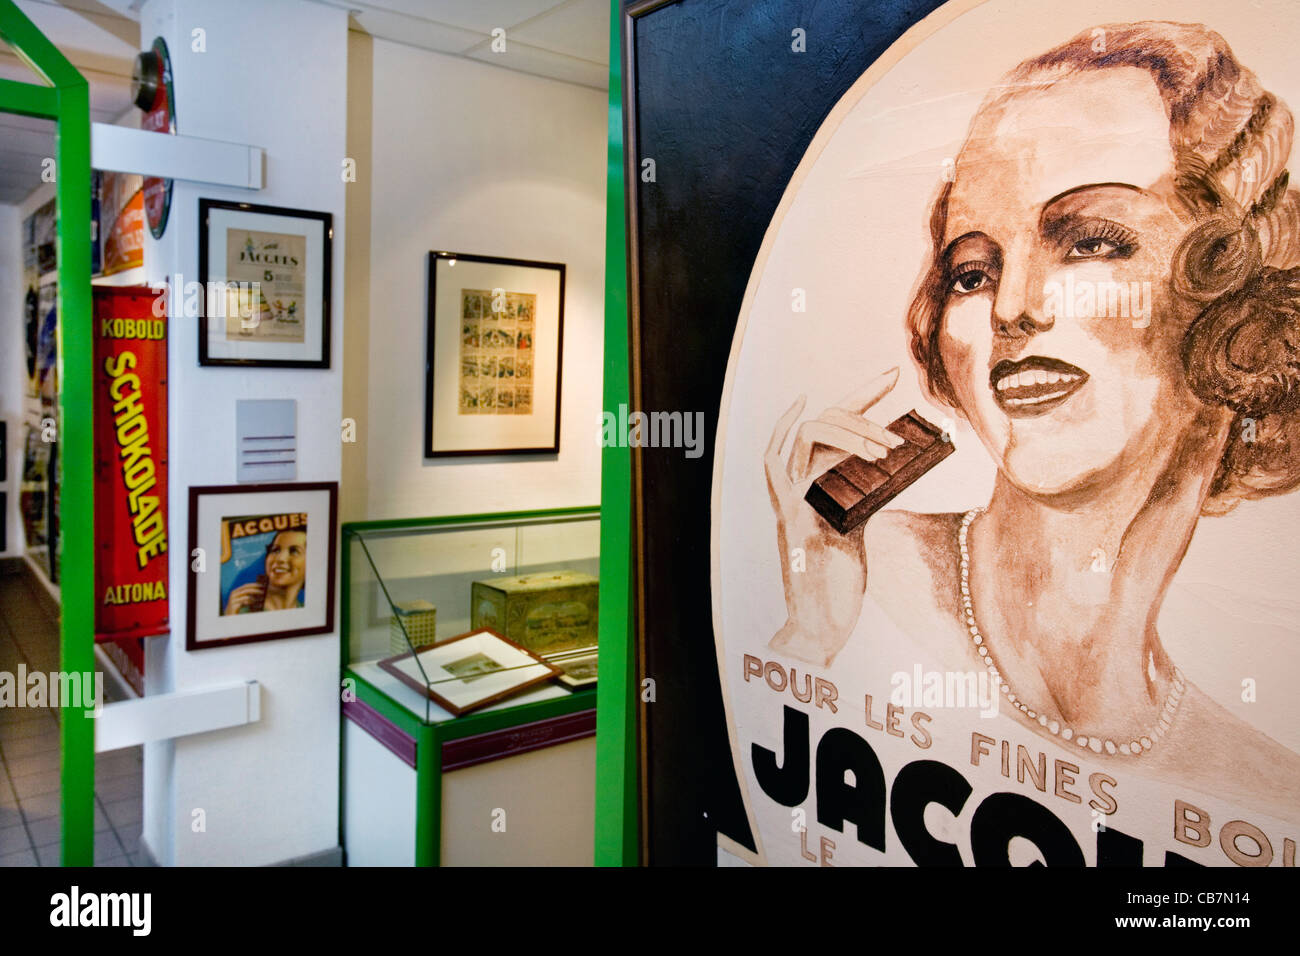 Intérieur de la musée du chocolat Jacques montrant vieilles affiches publicitaires, Eupen, Belgique Banque D'Images